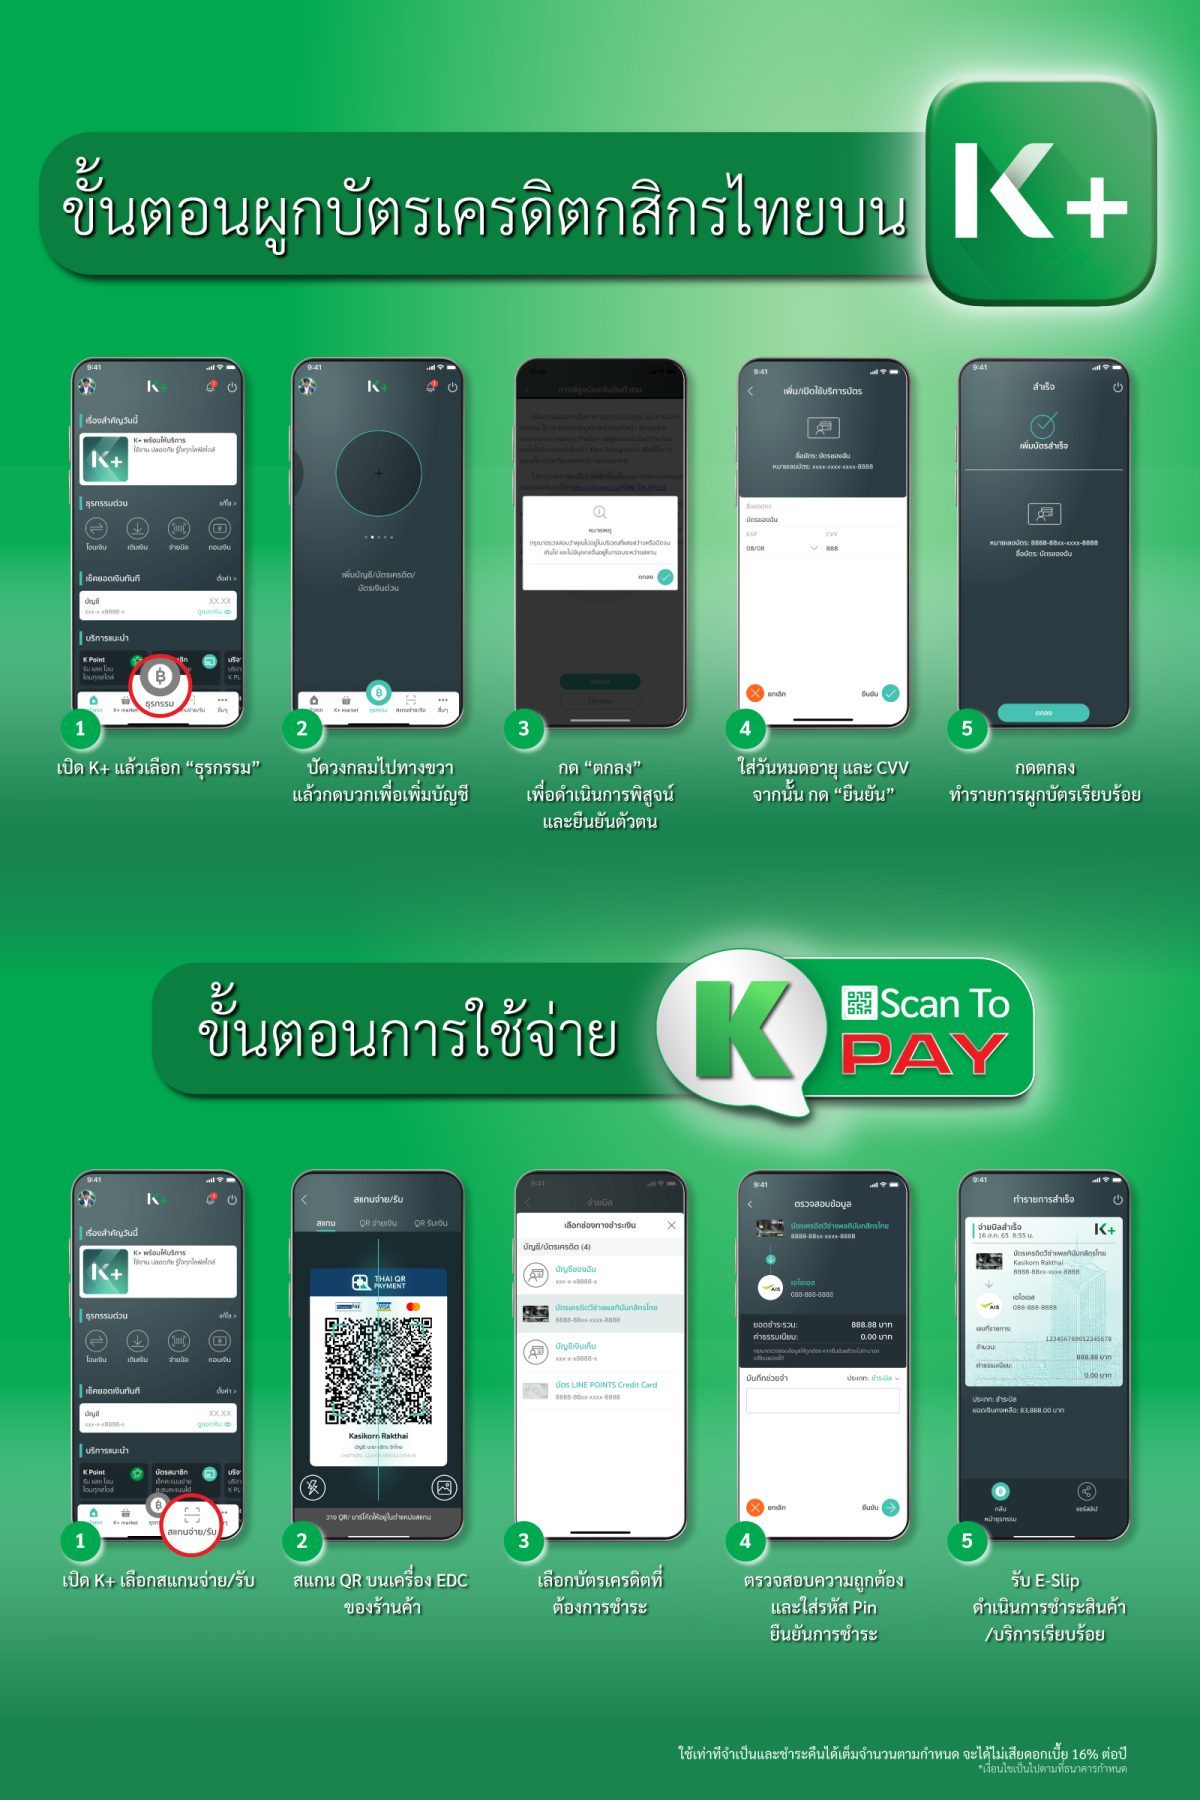 บัตรเครดิตกสิกรไทย ยกระดับสู่การใช้จ่ายผ่านสมาร์ทโฟนเต็มรูปแบบ เปิดตัว K Scan to Pay สแกนจ่ายคิวอาร์โค้ดบัตรเครดิต บน K PLUS